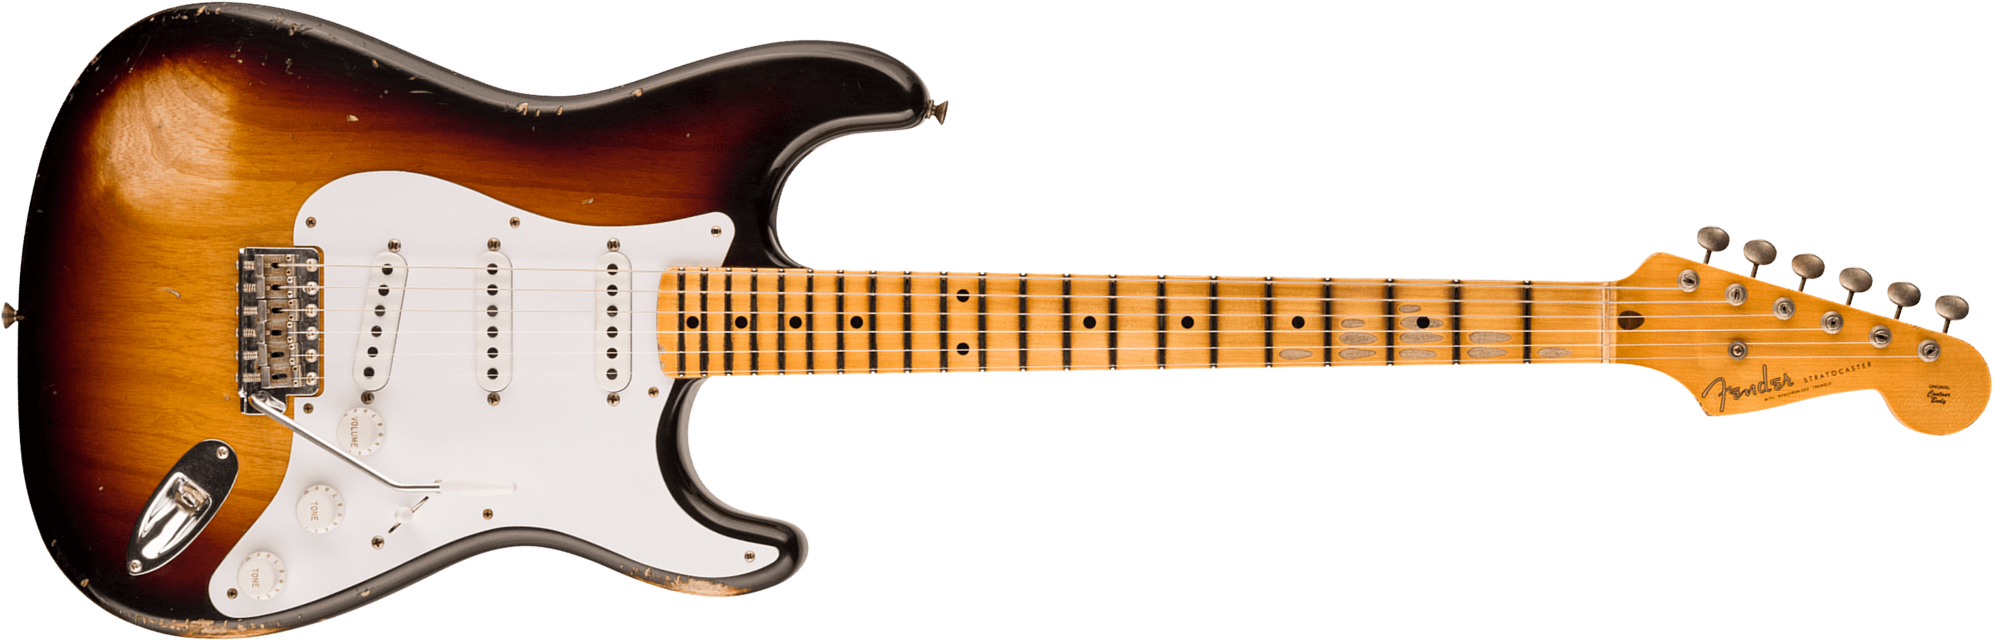 Fender Custom Shop Strat 1954 70th Anniv. 3s Trem Mn - Relic Wide-fade 2-color Sunburst - Guitare Électrique Forme Str - Main picture